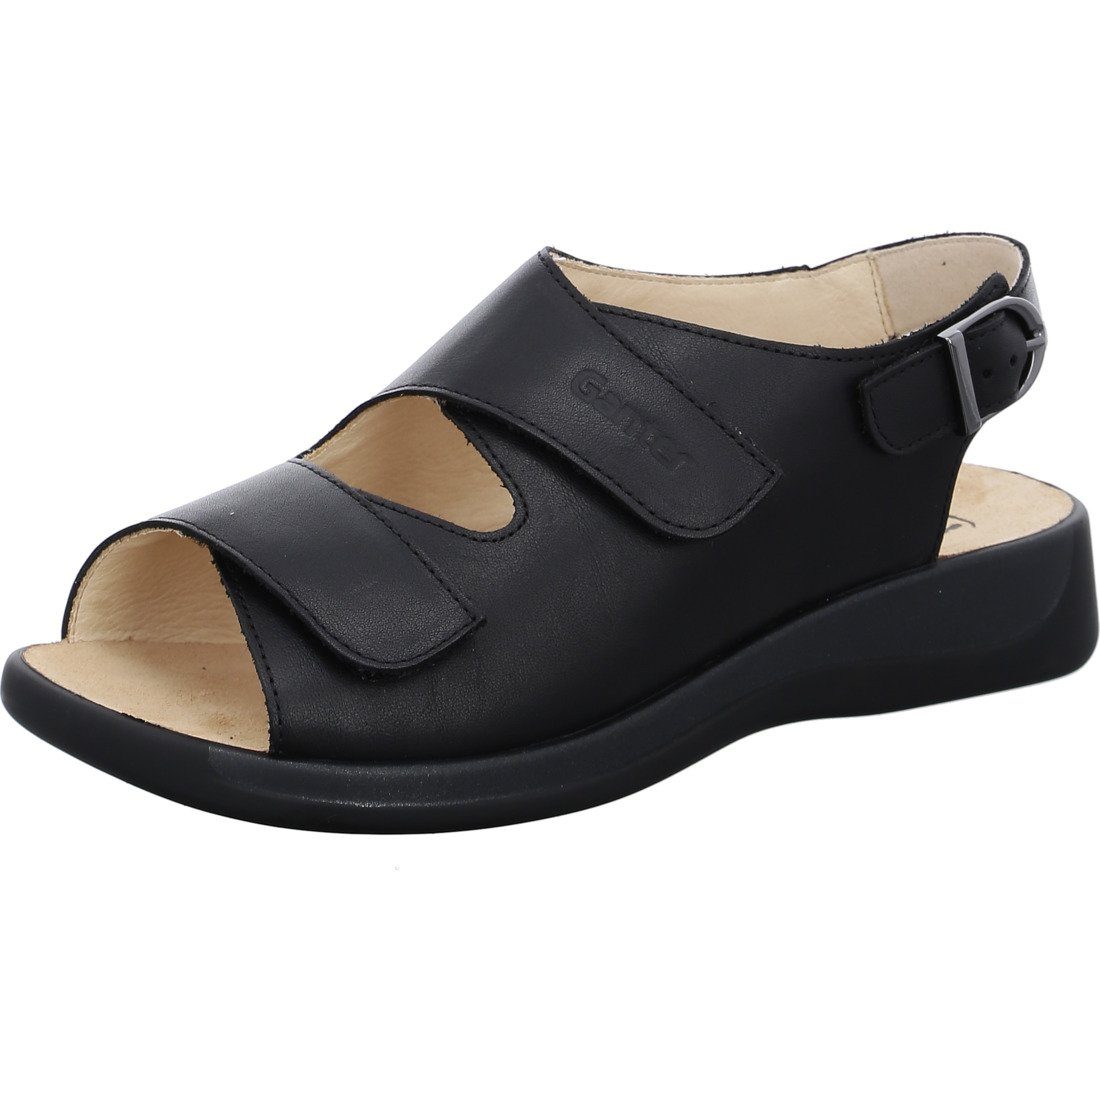 Ganter Ganter Schuhe, Sandalette Monica - Materialmix Sandalette schwarz 045895